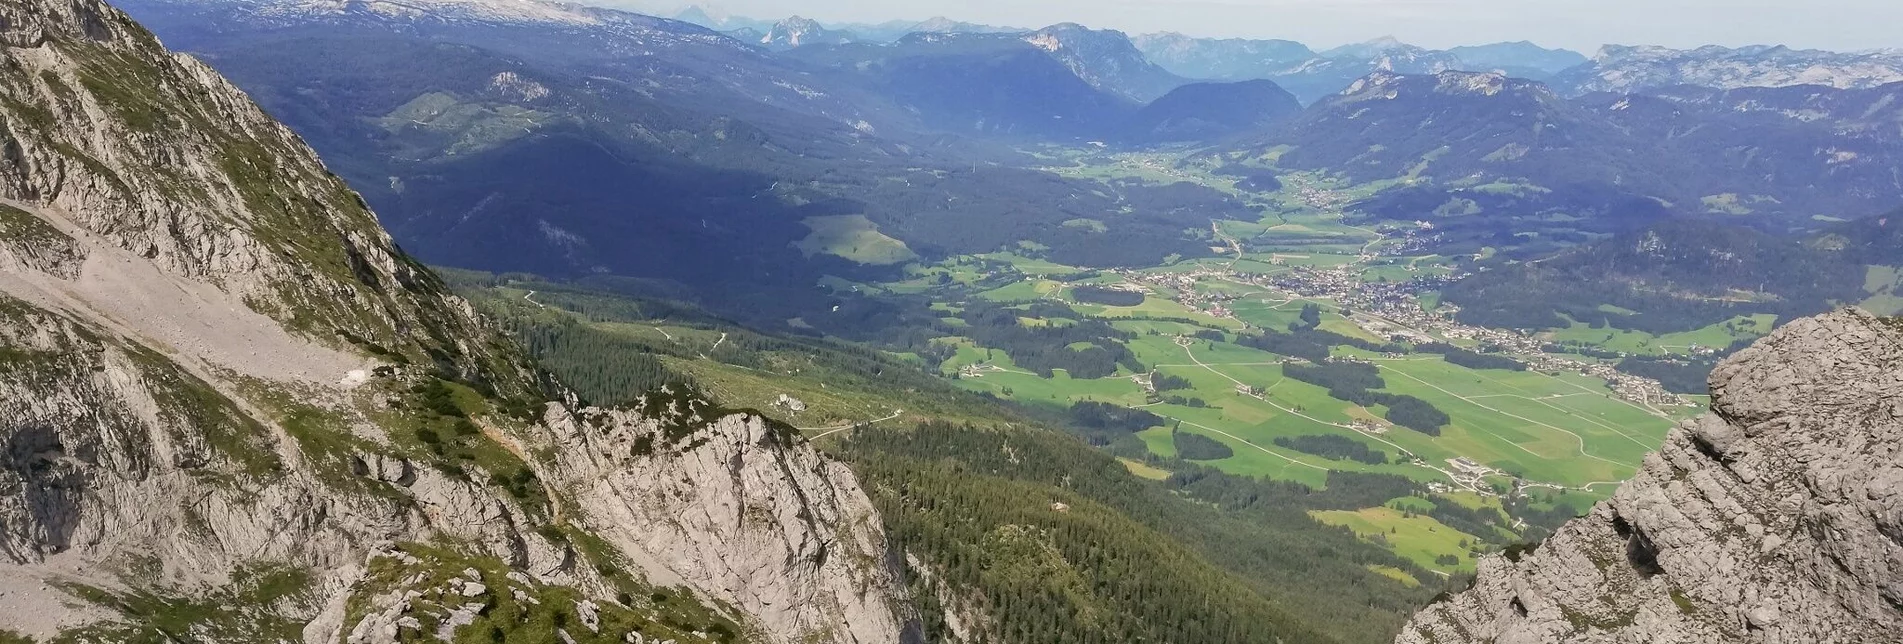 Bergtour Grimming Nordanstieg - Touren-Impression #1 | © Erlebnisregion Schladming-Dachstein